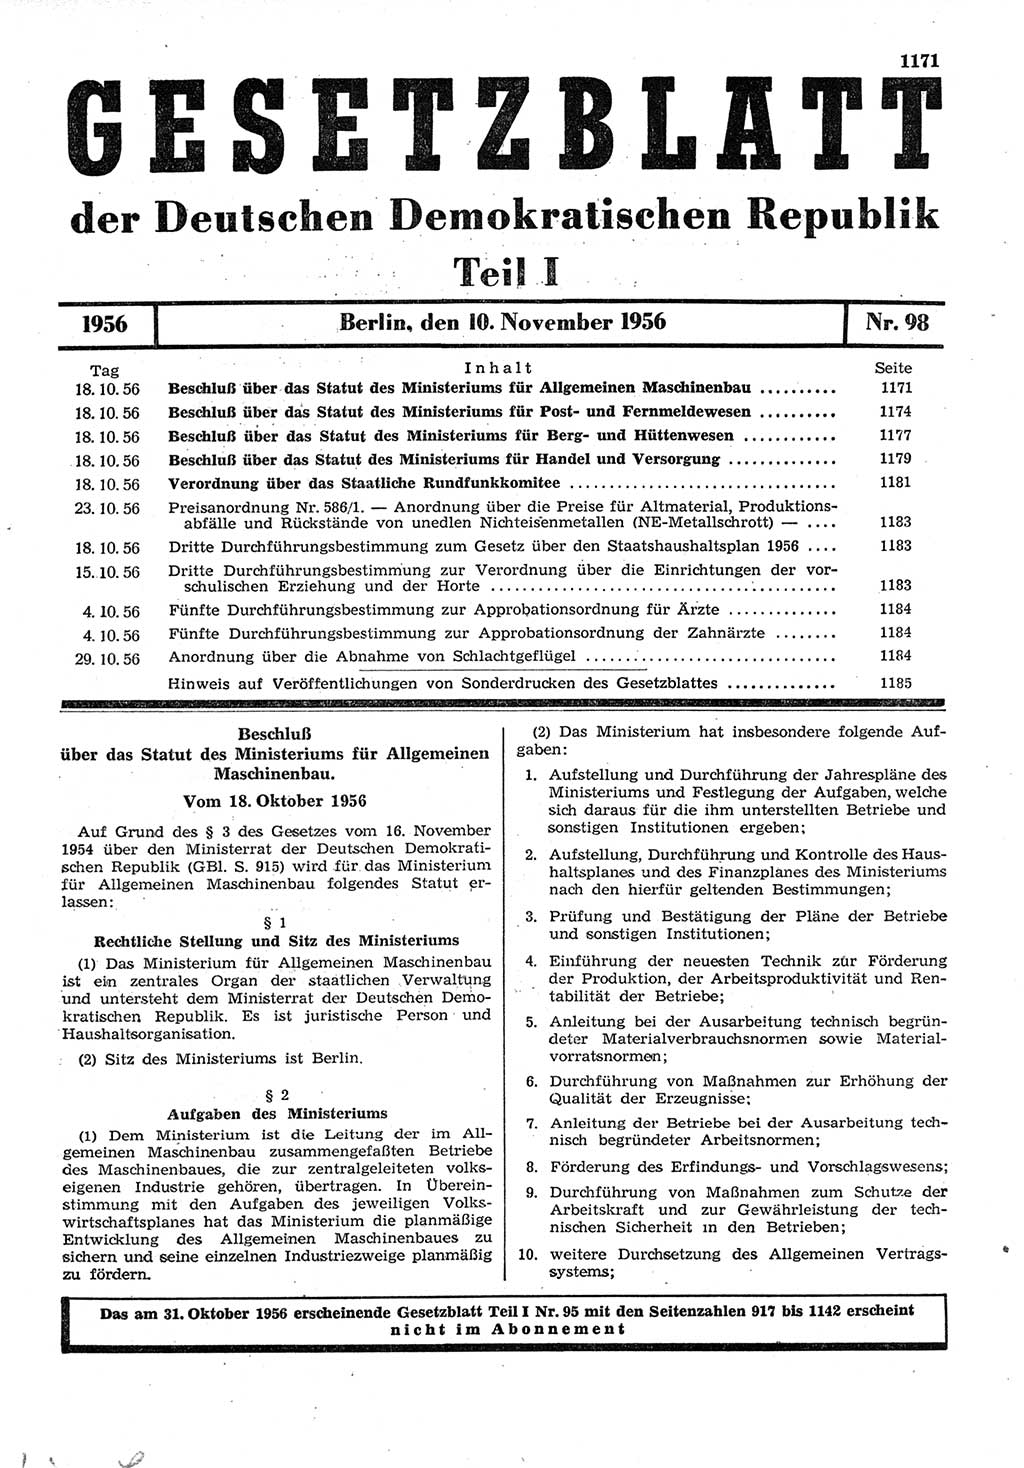 Gesetzblatt (GBl.) der Deutschen Demokratischen Republik (DDR) Teil Ⅰ 1956, Seite 1171 (GBl. DDR Ⅰ 1956, S. 1171)